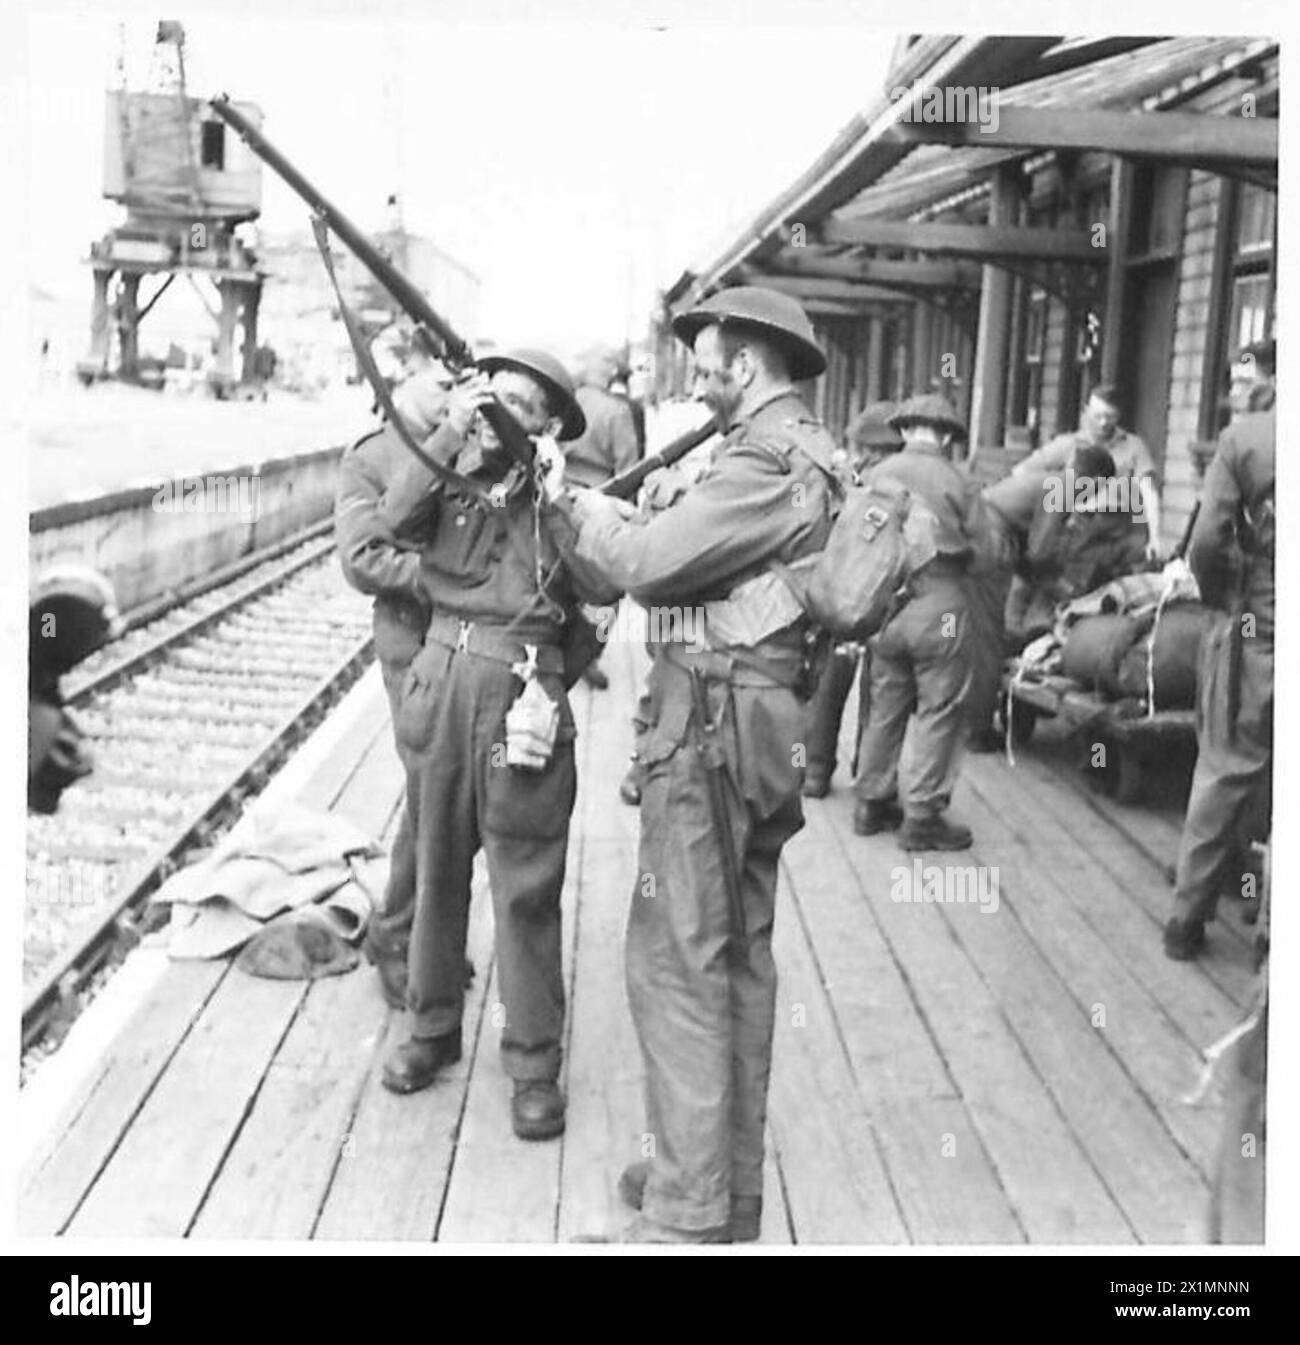 ARRIVO DA DIEPPE - questi uomini guardano i loro fucili e le loro attrezzature all'arrivo a Newhaven, British Army Foto Stock